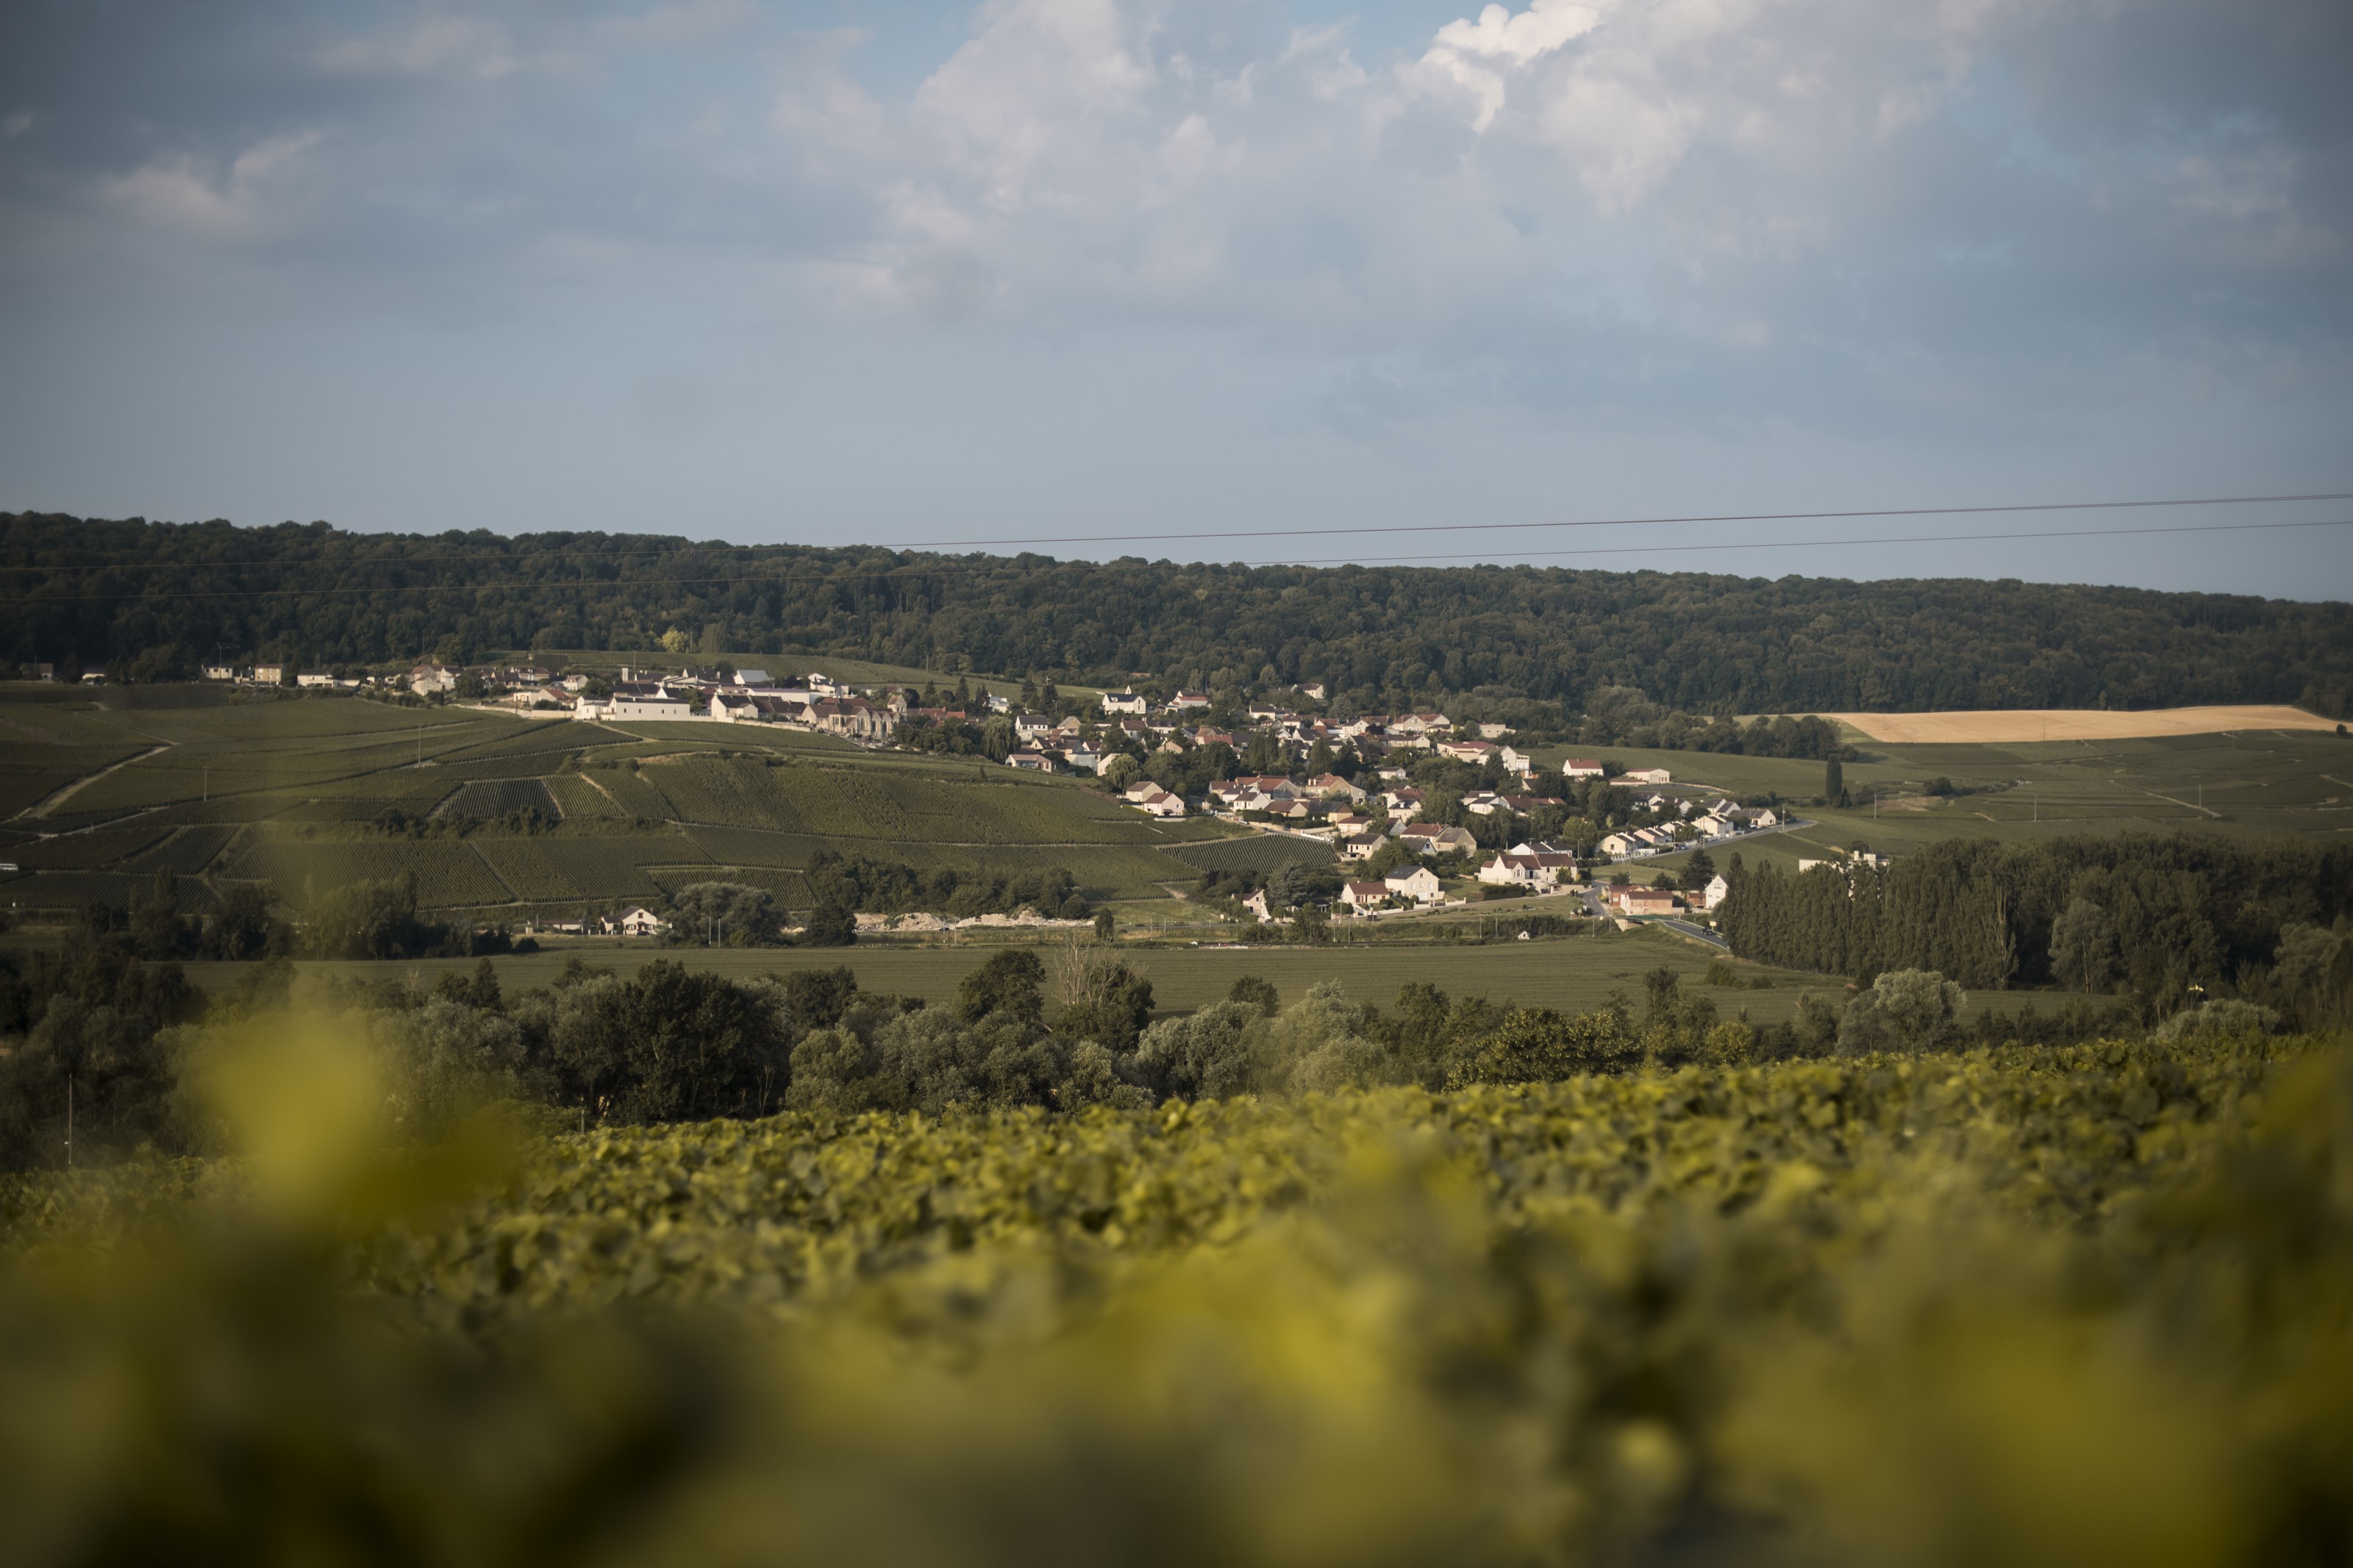 <p>Siden 1780 har Champagne Tarlant holdt til h&oslash;yt oppe i &aring;ssiden over landsbyen Oeuilly, noen kilometer vest for &Eacute;pernay. I dag drives eiendommen av s&oslash;skenparet M&eacute;lanie og Beno&icirc;t Tarlant, som er tolvte generasjon. De disponerer 14 hektar med vinmark fordelt p&aring; hele 48 forskjellige parseller i de fire landsbyene Oeuilly, Boursault, St.-Agnan and Celles-l&egrave;s-Cond&eacute;. En kort titt p&aring; et kart over Champagne forteller oss at vi ikke befinner oss i de mest anerkjente vinmarkene i Champagne. Det har ikke forhindret Tarlant-familien fra &aring; jobbe like seri&oslash;st, og vel s&aring; det, som de antatt beste produsentene i Champagne. Og dedikert jobbing skaper som kjent resultater. Det er her vi finner n&oslash;kkelen til familiehusets suksess.</p>